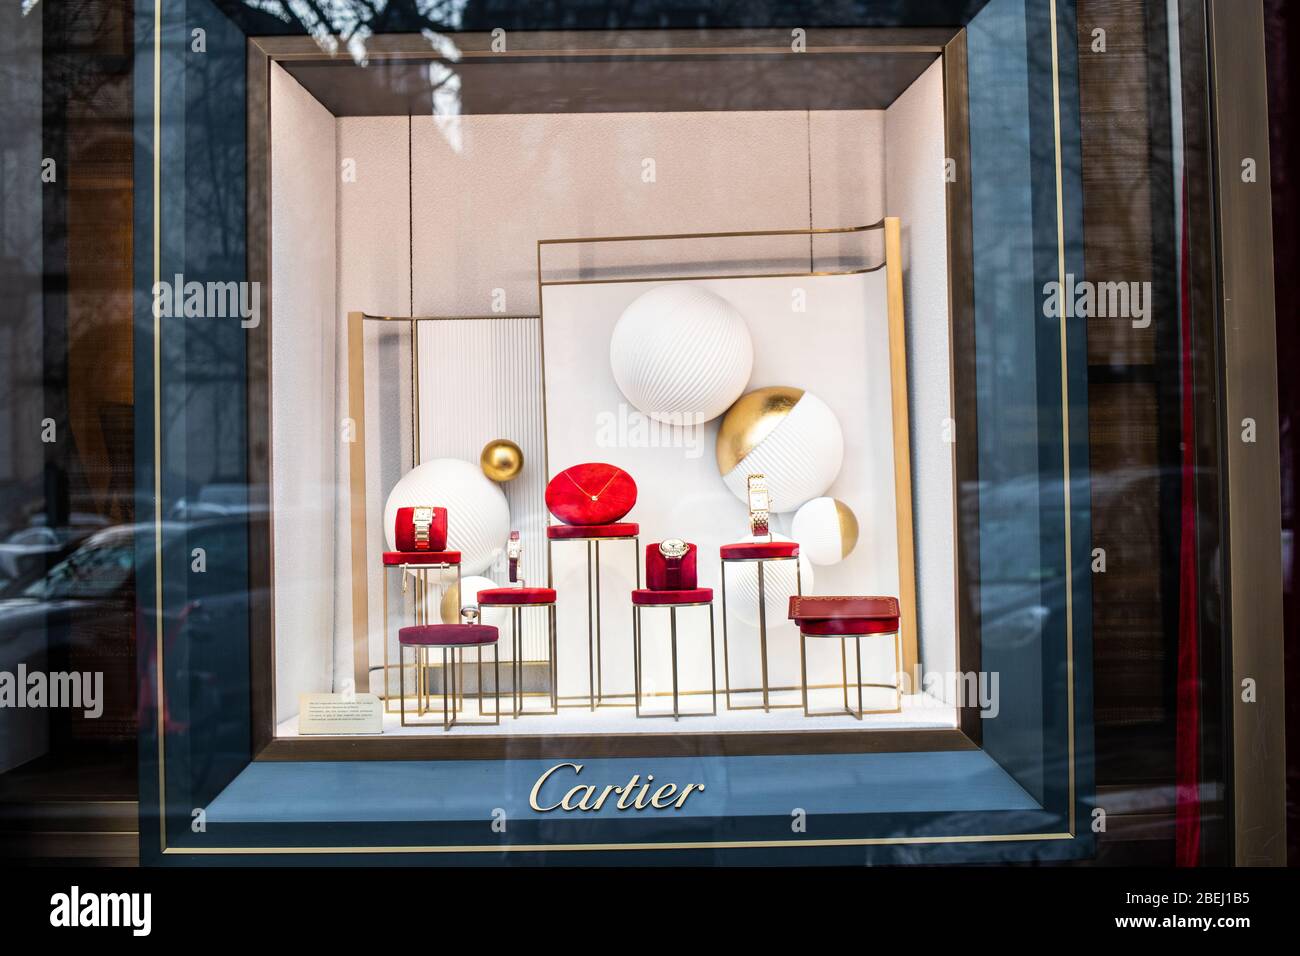 Bruselas, Bélgica, 2020 de enero: Joyería Cartier, escaparates, exposición con accesorios de ropa, relojes y joyas de Cartier Foto de stock